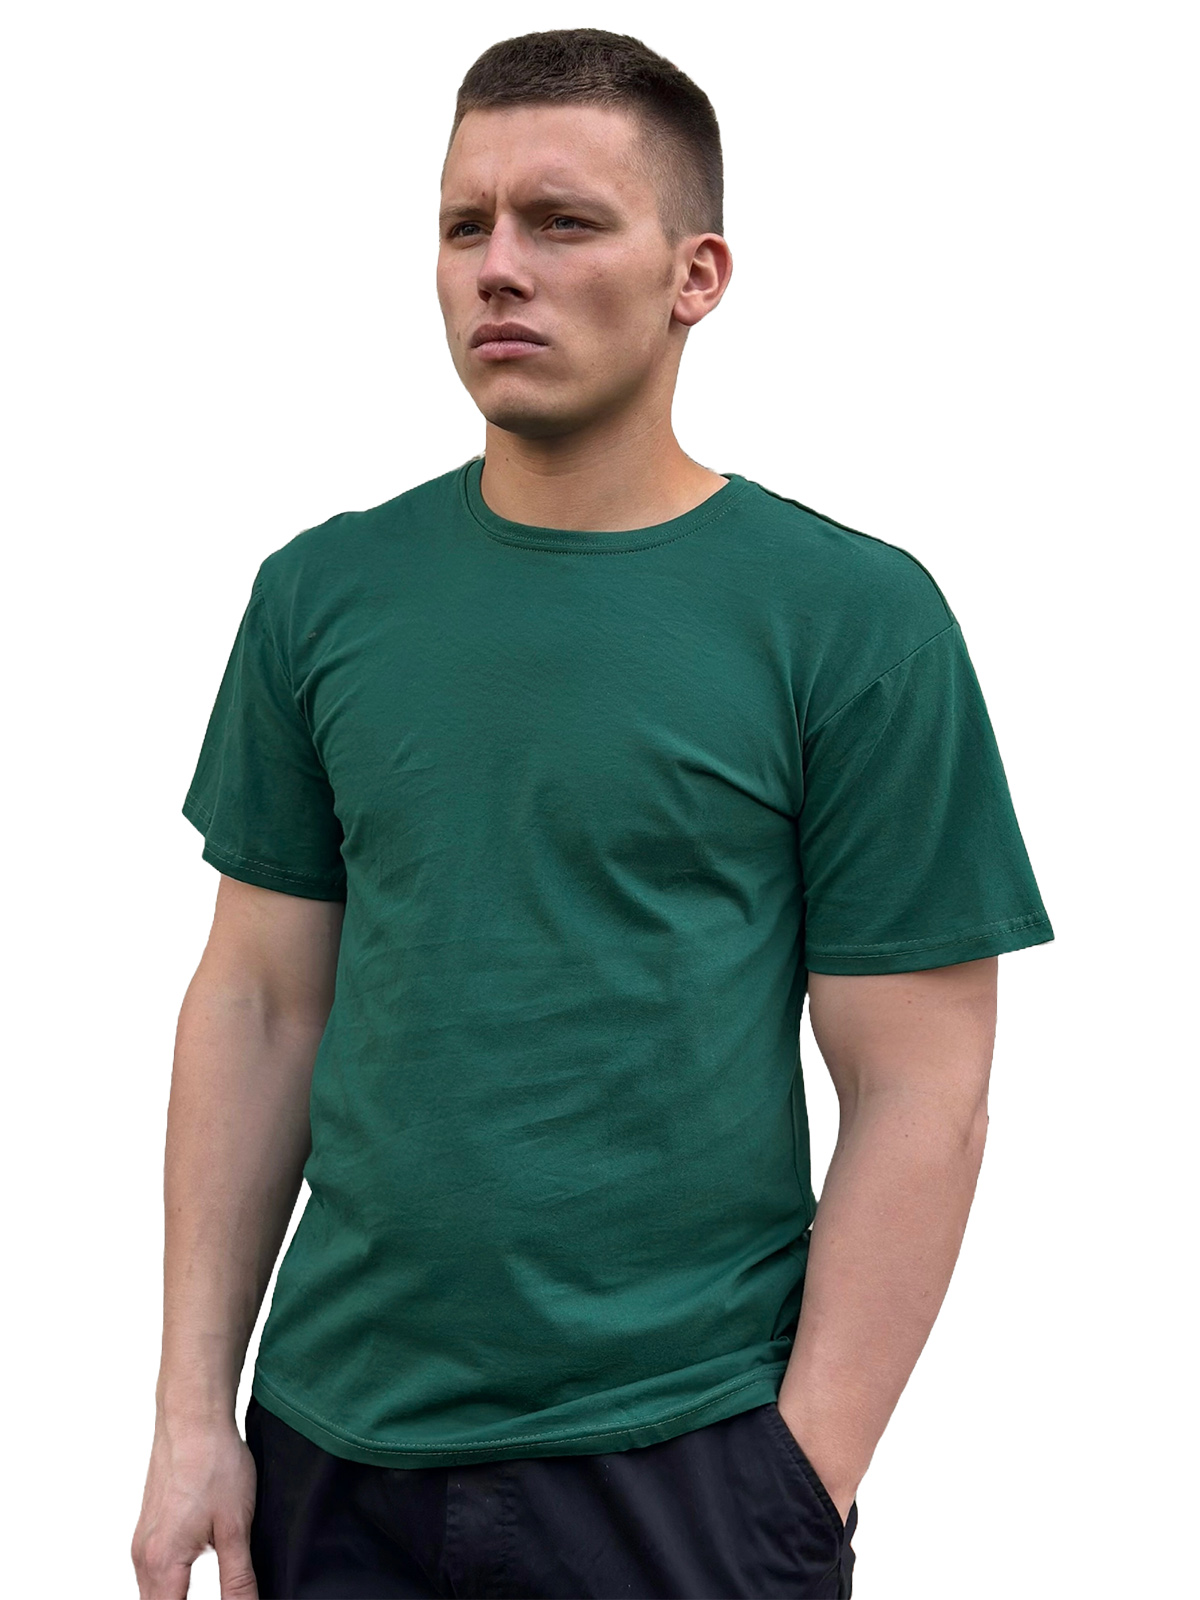 Однотонная зеленая футболка - в розницу и оптом